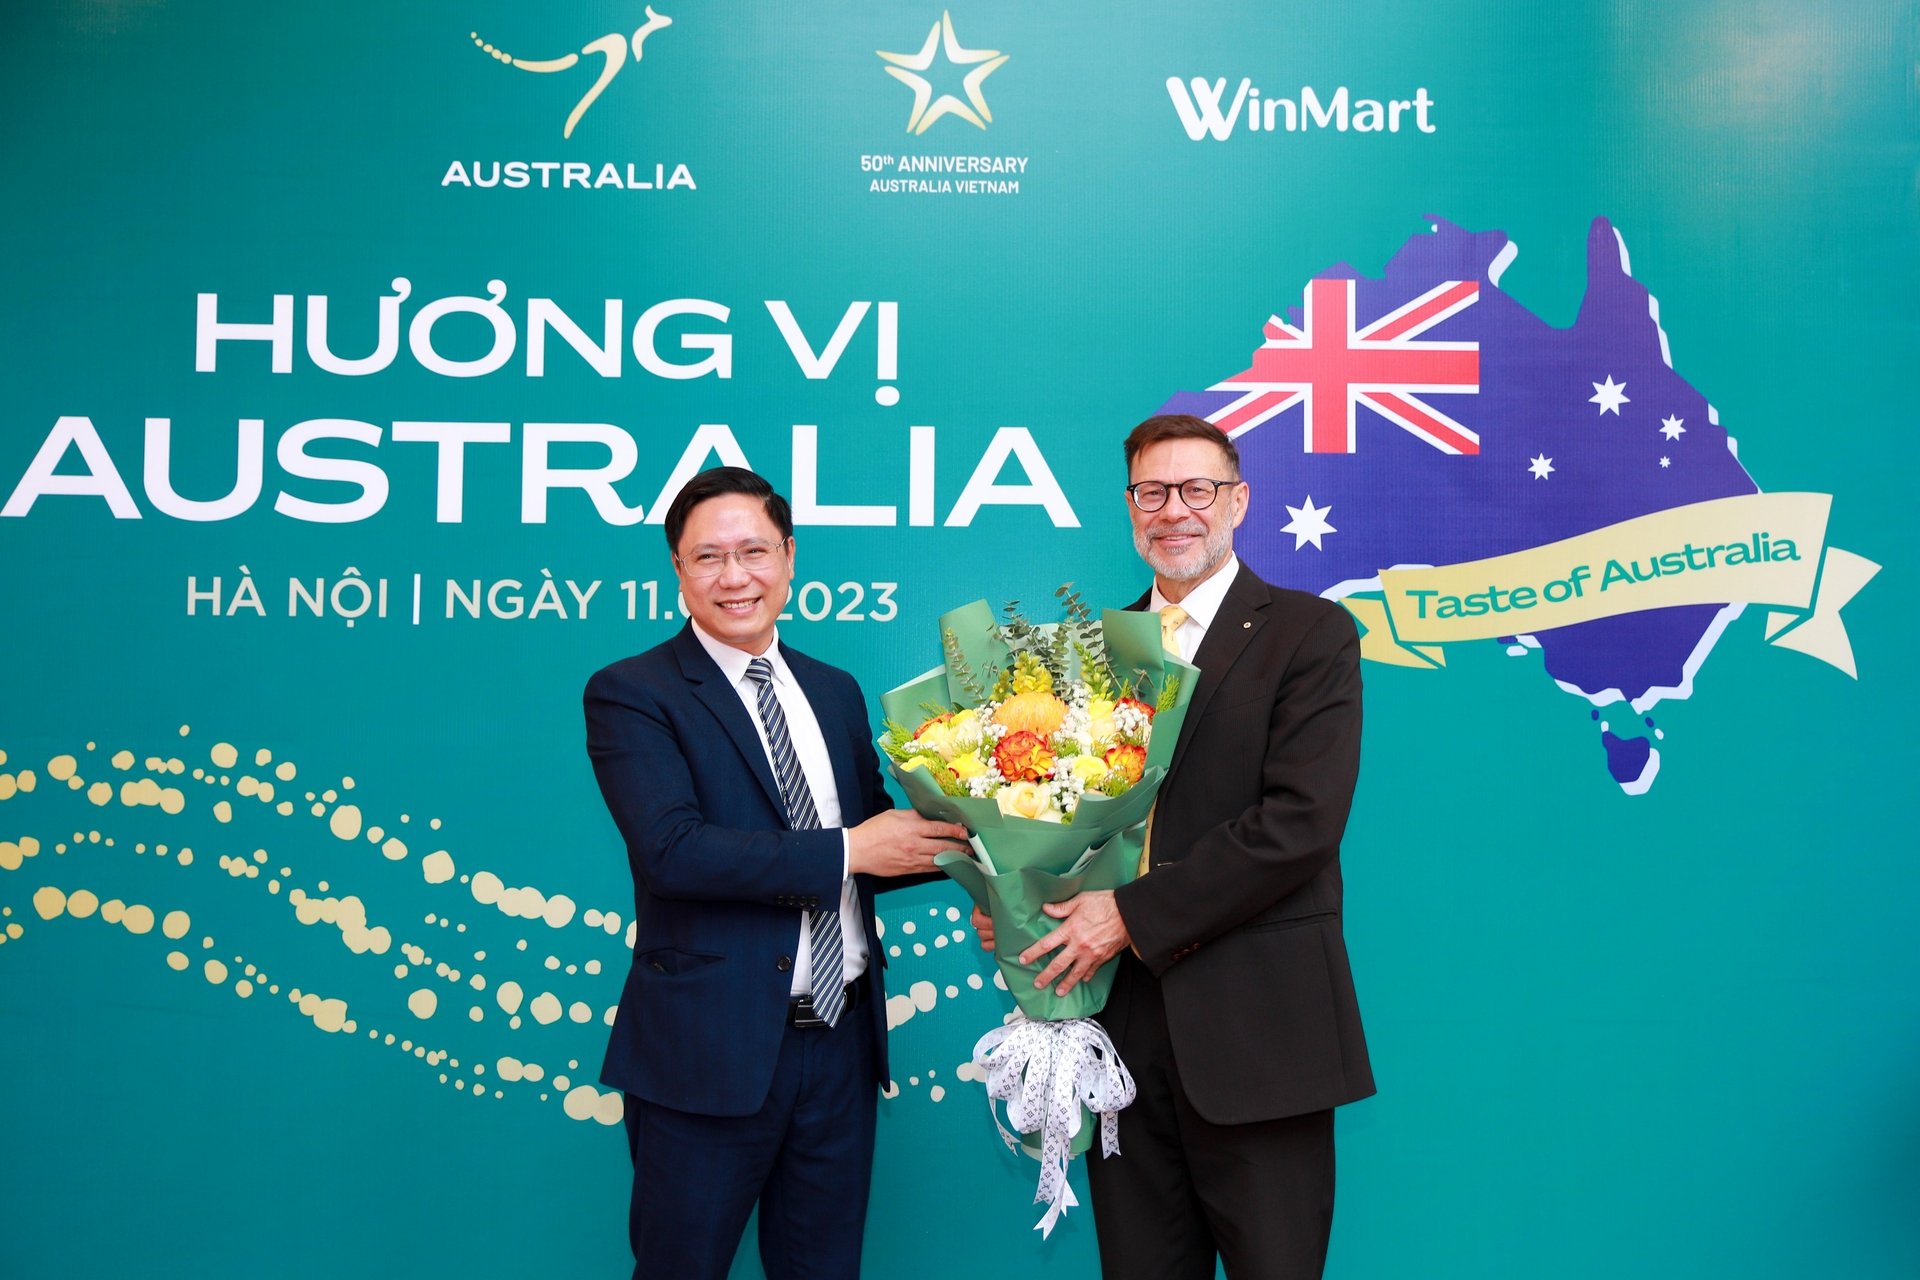 WinCommerce phối hợp cùng chính phủ Australia tổ chức Lễ hội Hương vị Australia 2023.